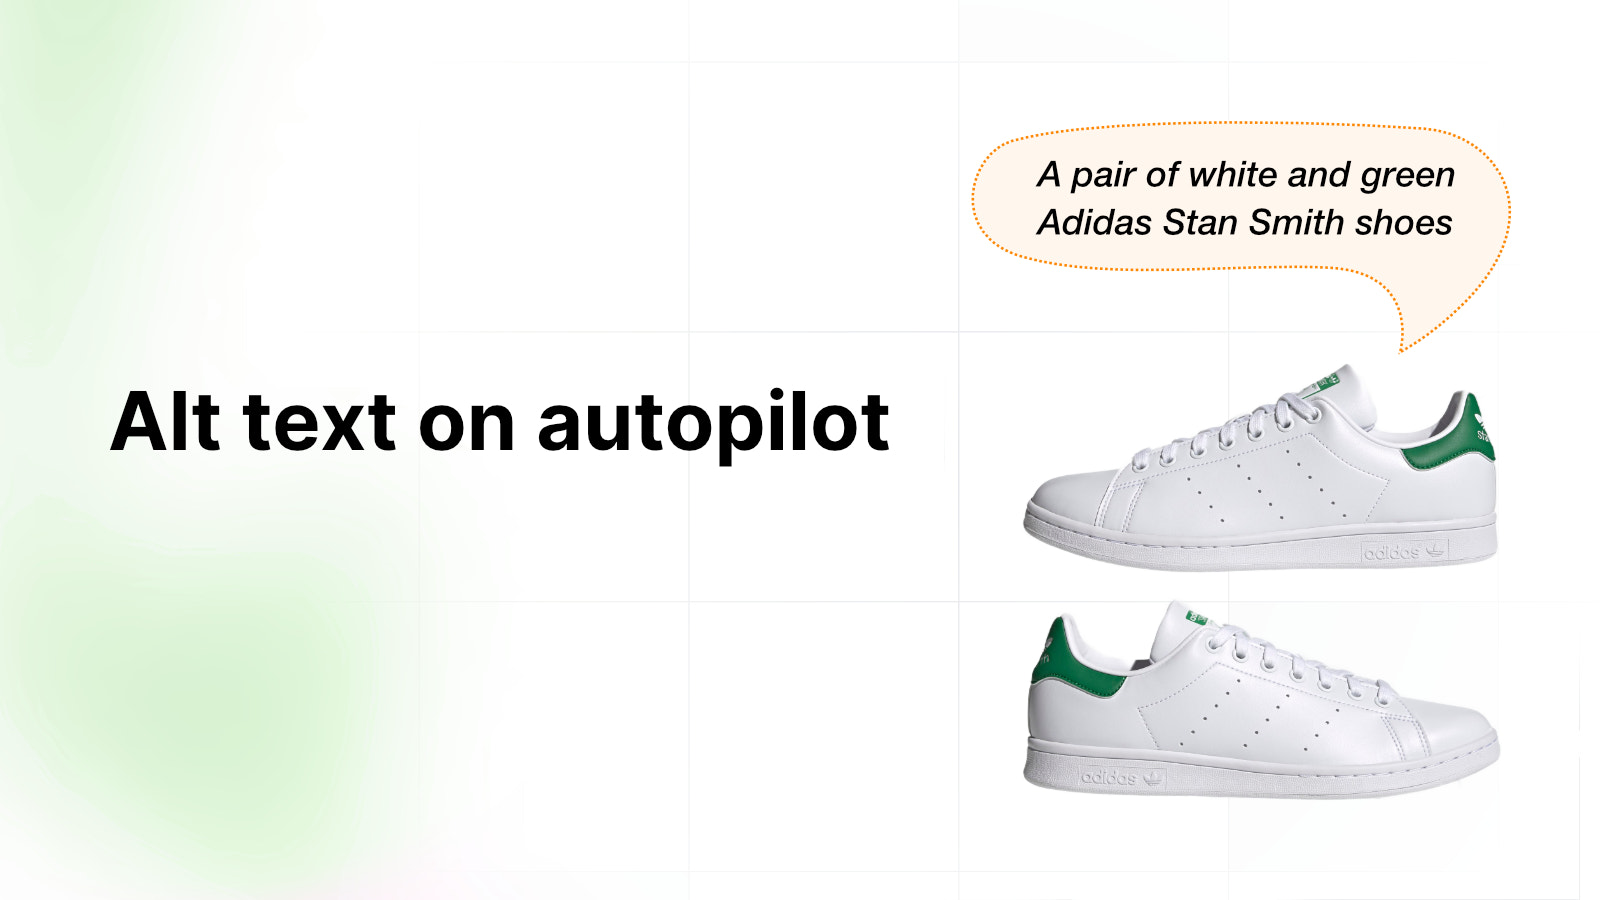 Un par de zapatos blancos y verdes